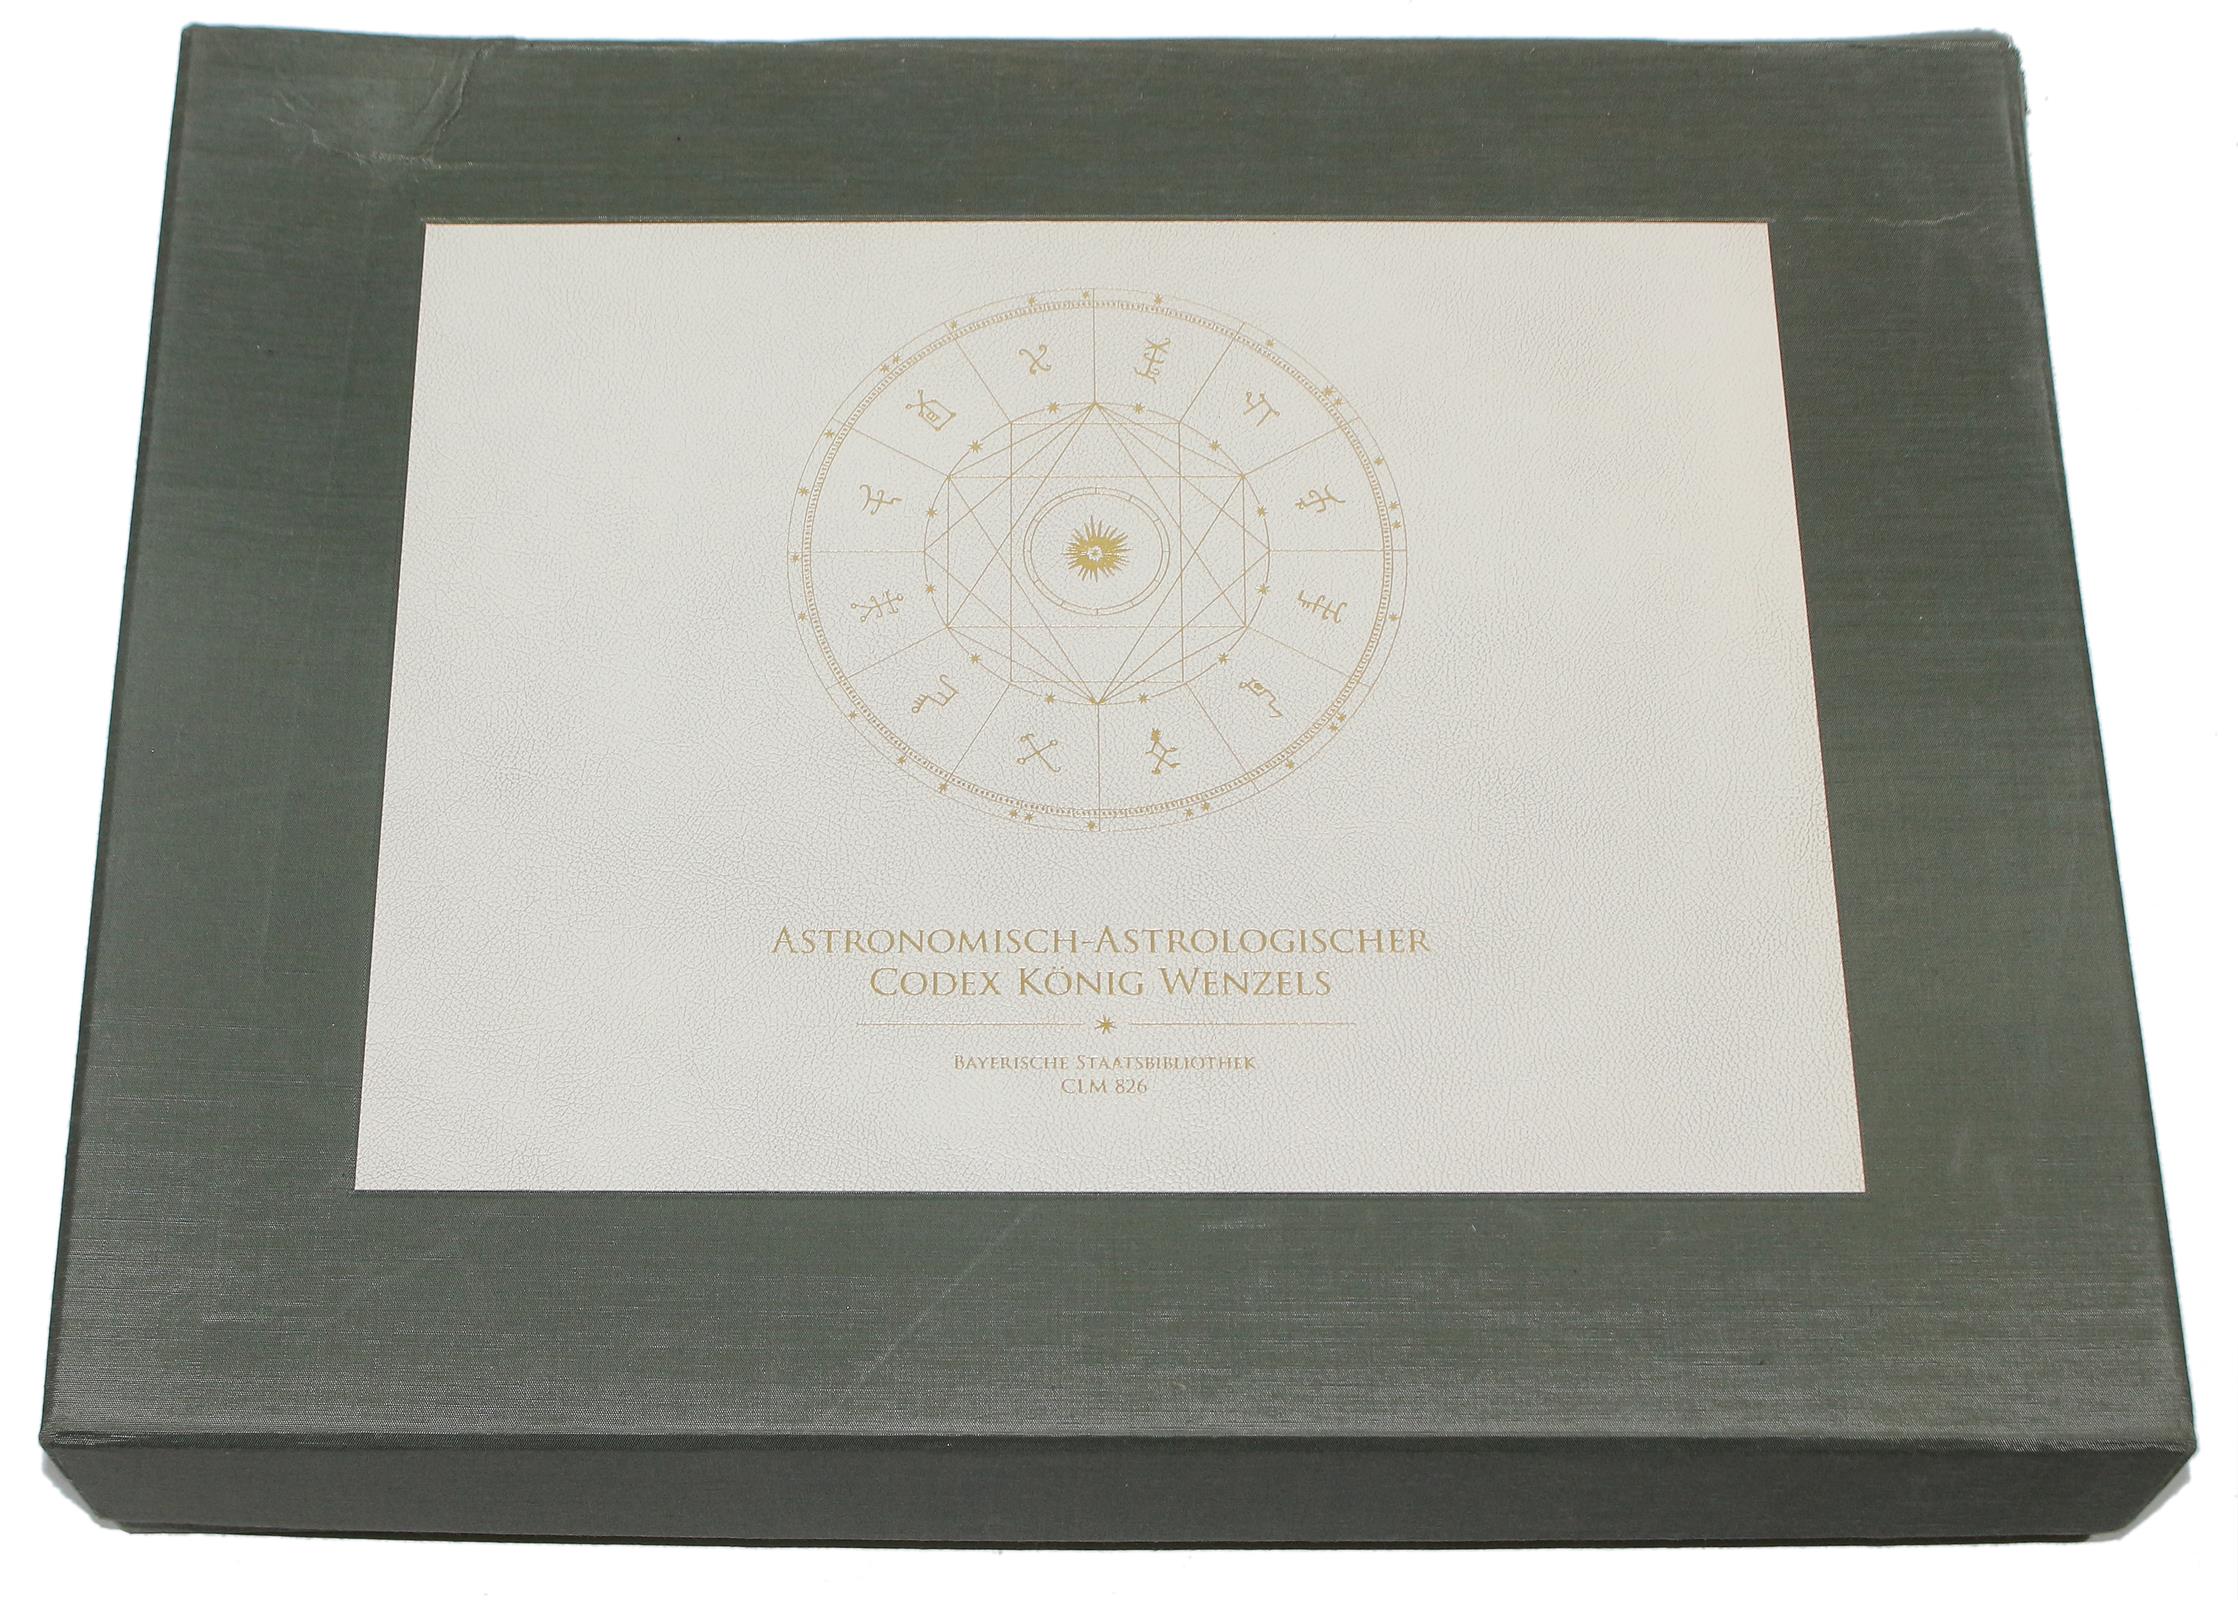 Astronomisch-astrologischer Codex König Wenzels IV. | Bild Nr.6